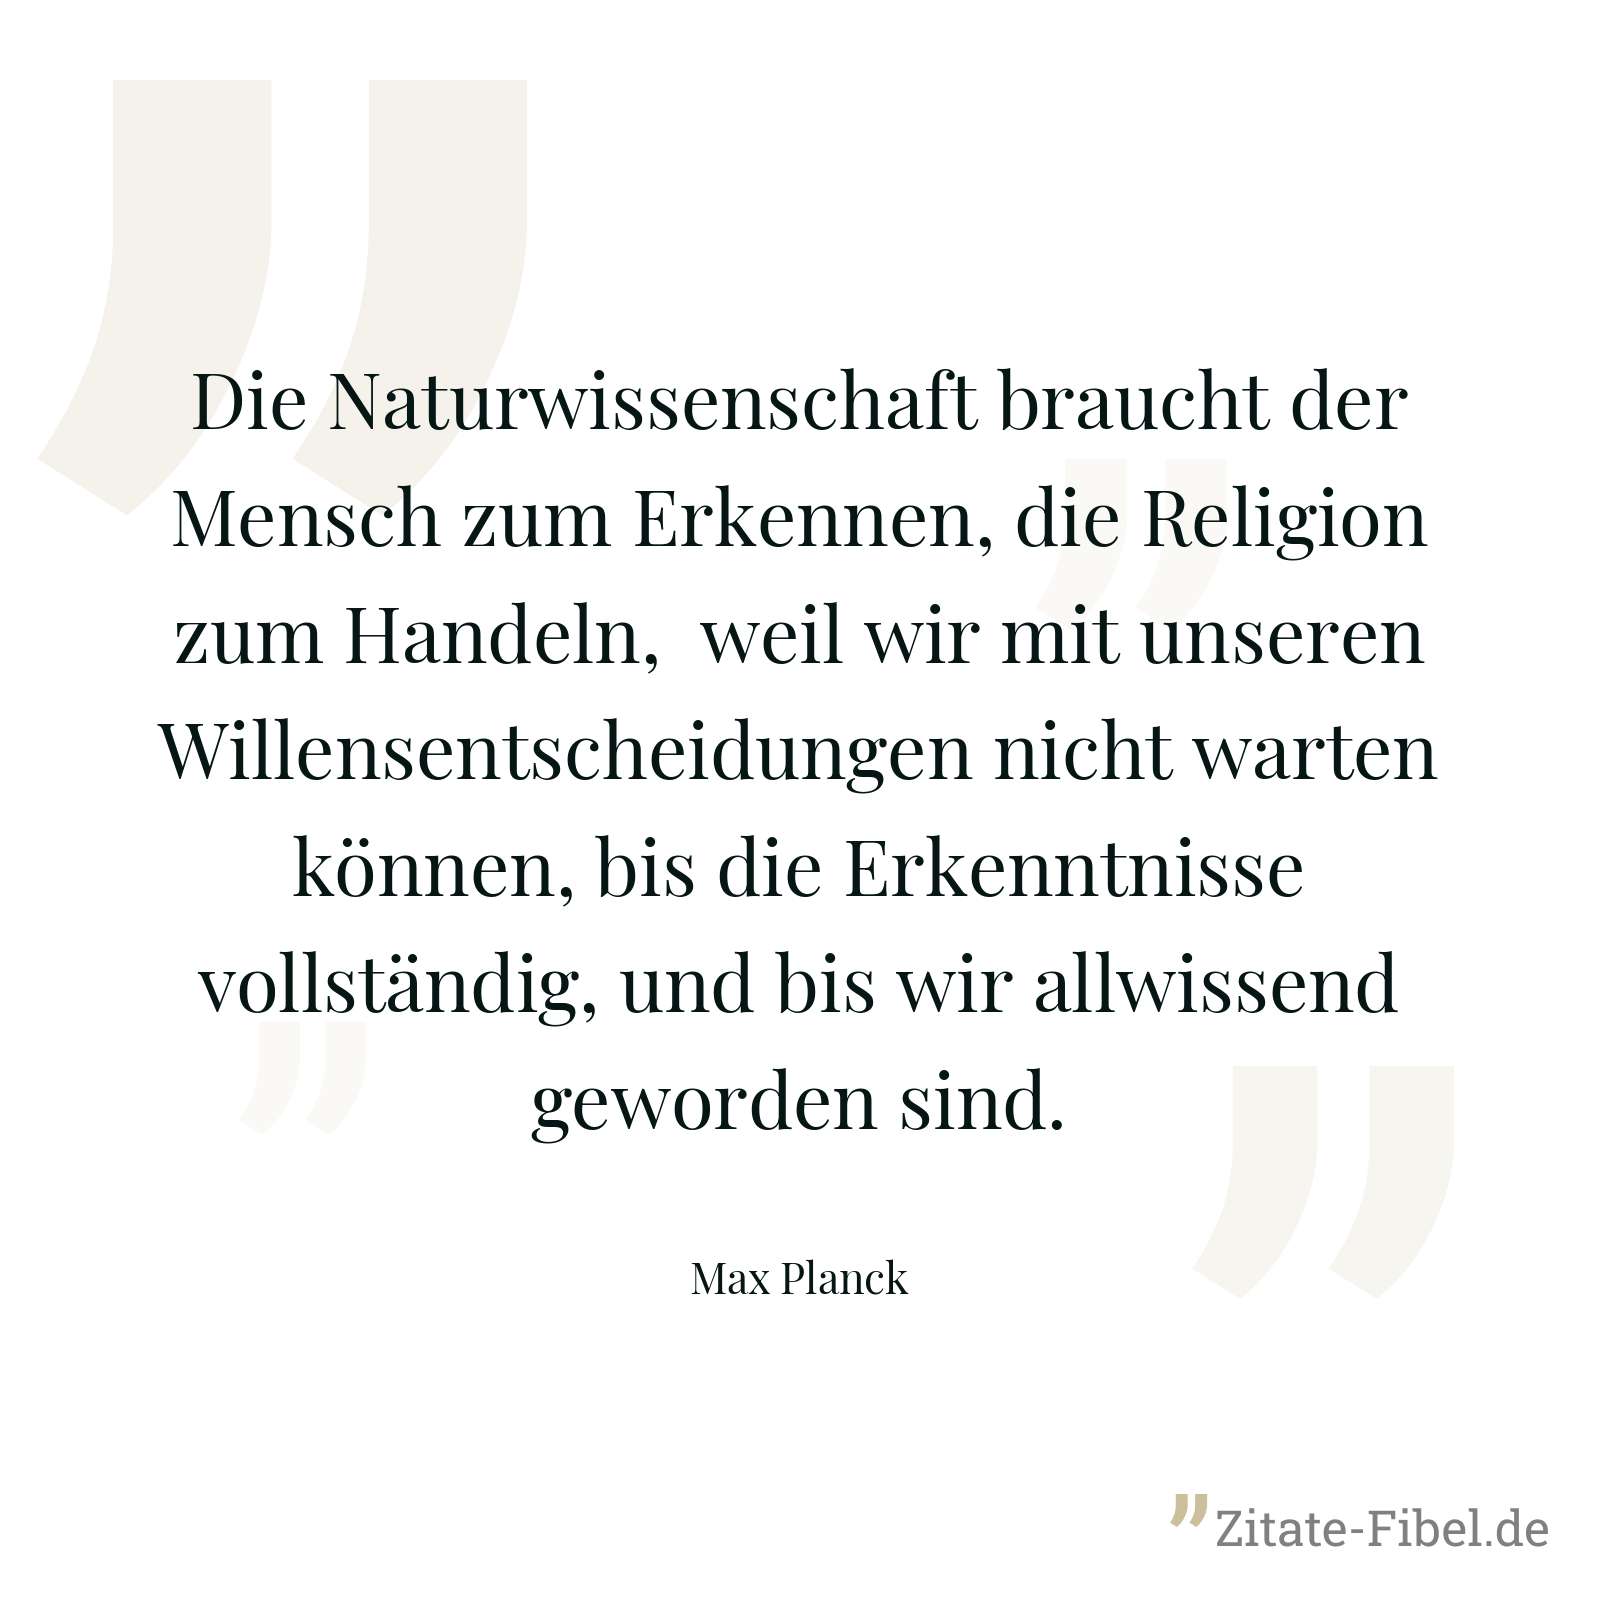 Die Naturwissenschaft braucht der Mensch zum Erkennen, die Religion zum Handeln, weil wir mit unseren Willensentscheidungen nicht warten können, bis die Erkenntnisse vollständig, und bis wir allwissend geworden sind. - Max Planck